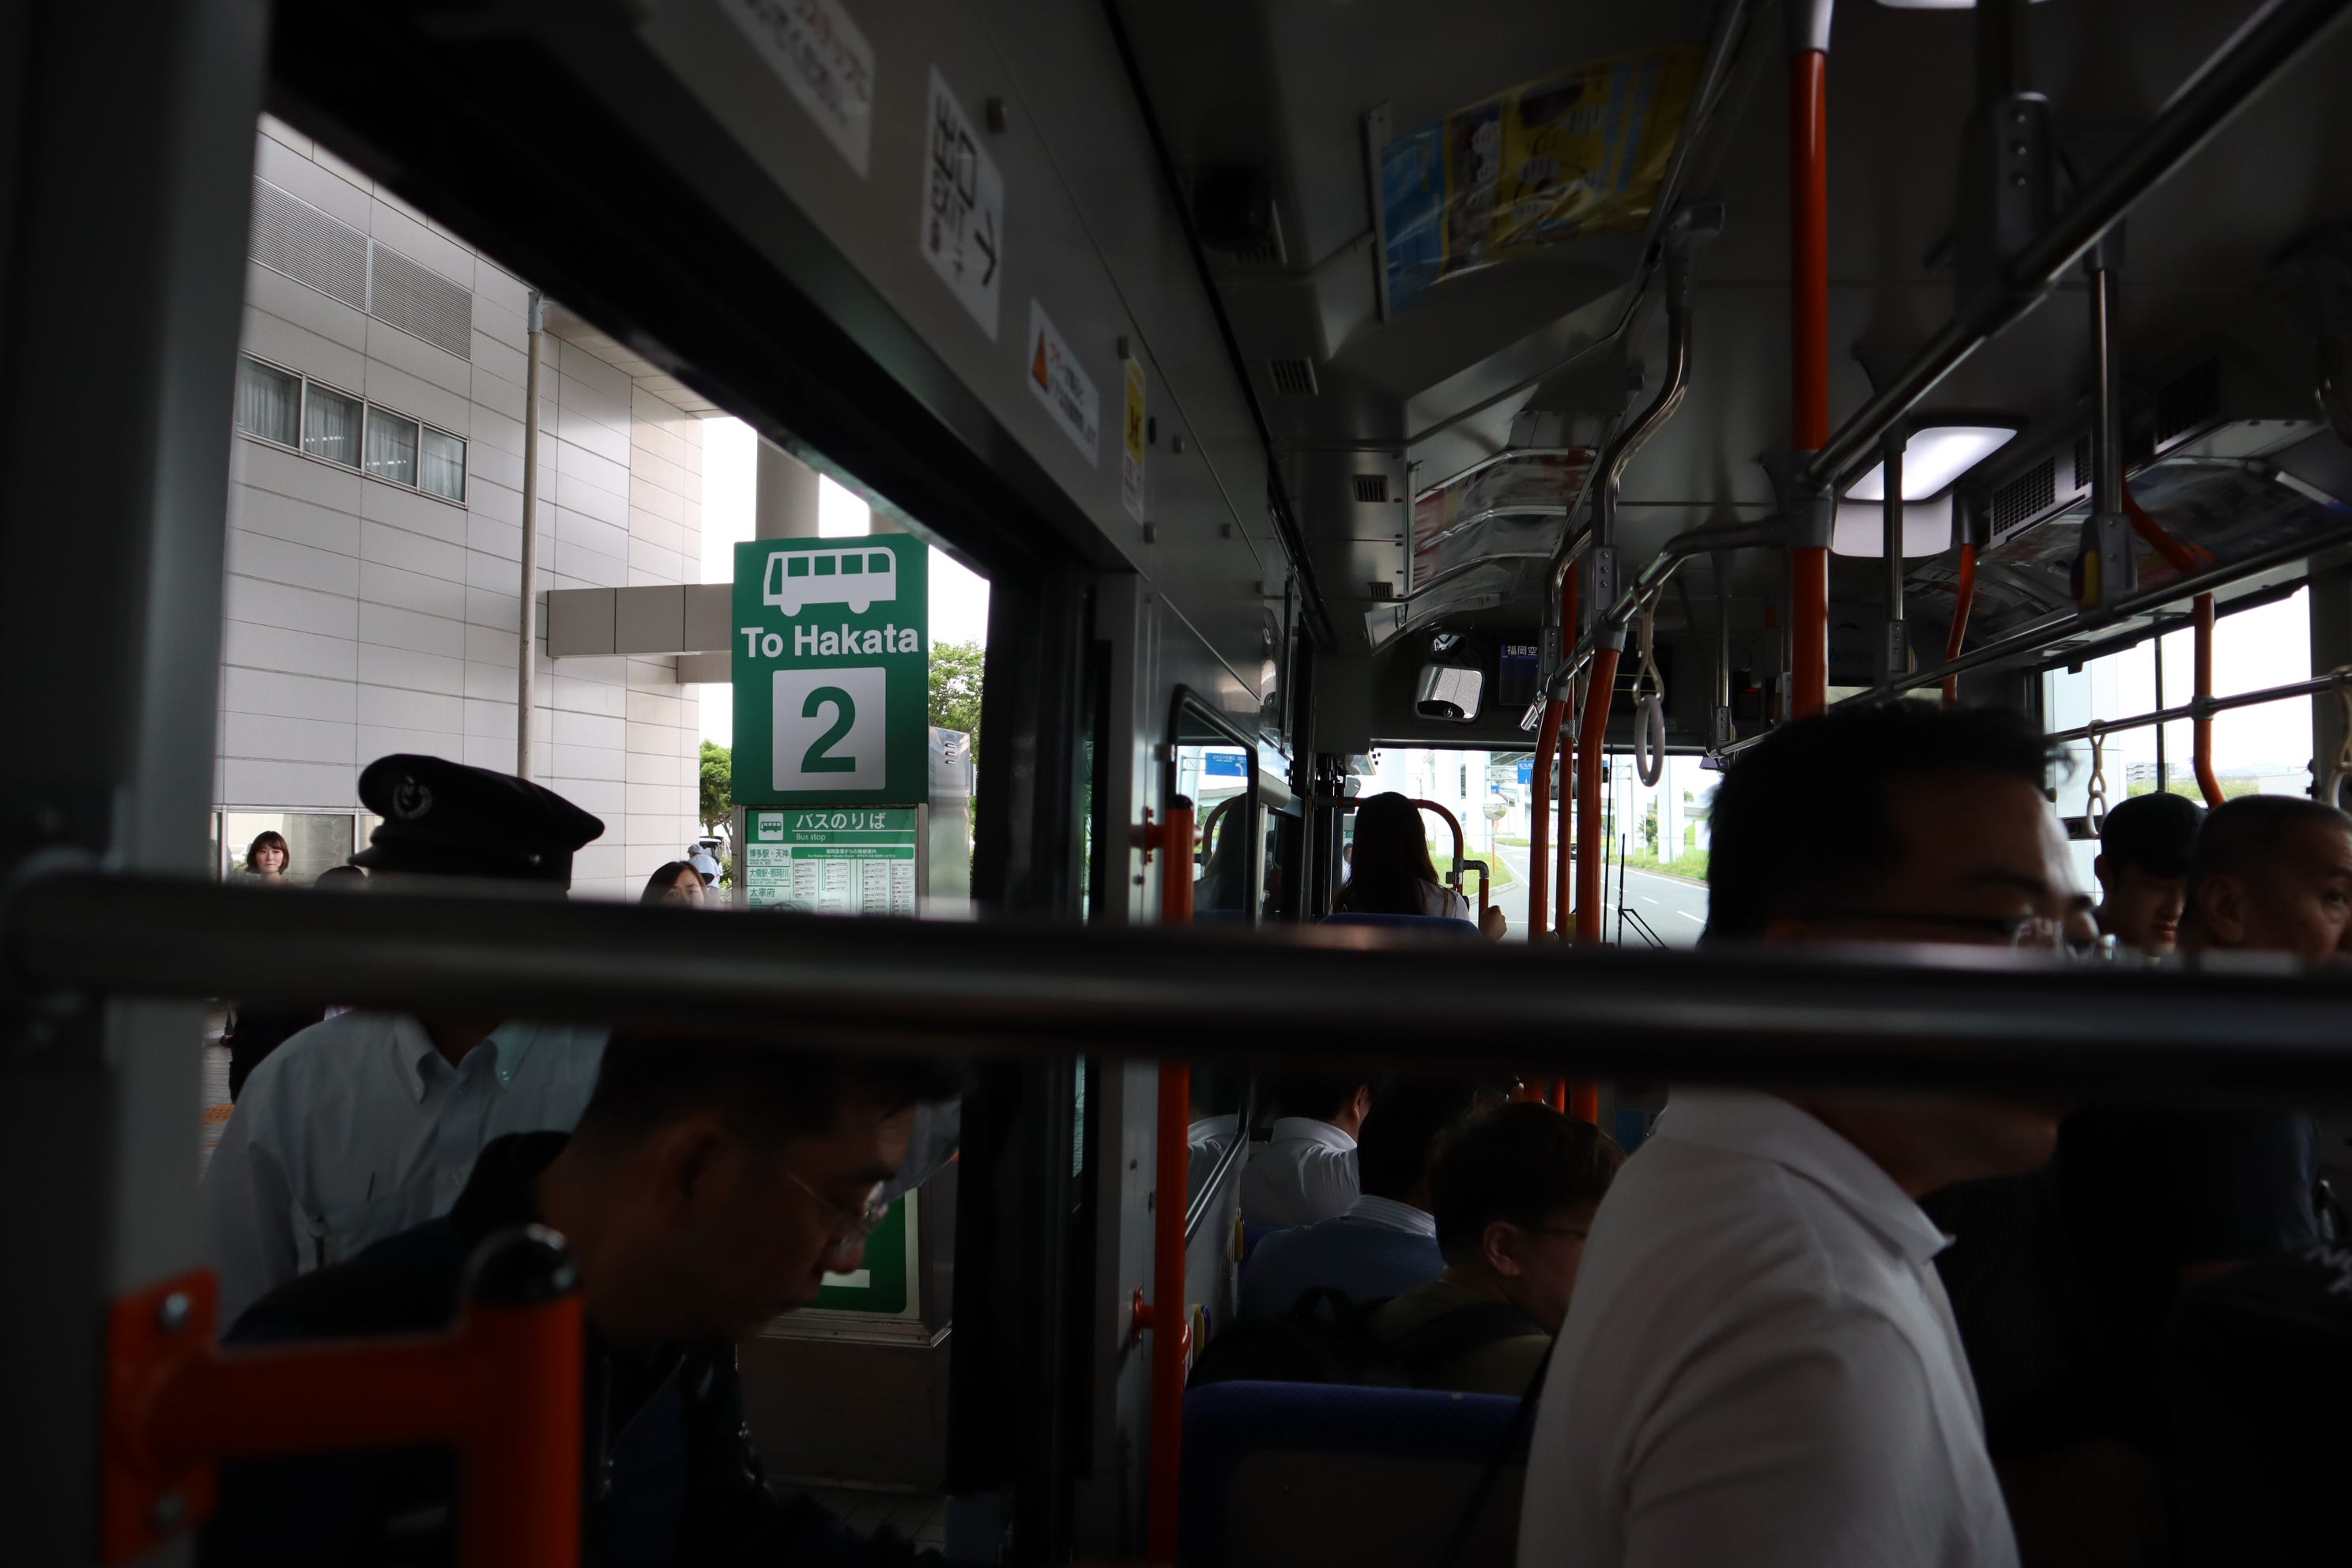 ภาพตอนกำลังขึ้นรถเมล์ ต้องขึ้นก่อน แล้วค่อยไปจ่ายที่ปลายทางที่จะลงครับ ซึ่งก็จะไปจ่ายหน้ารถเมล์